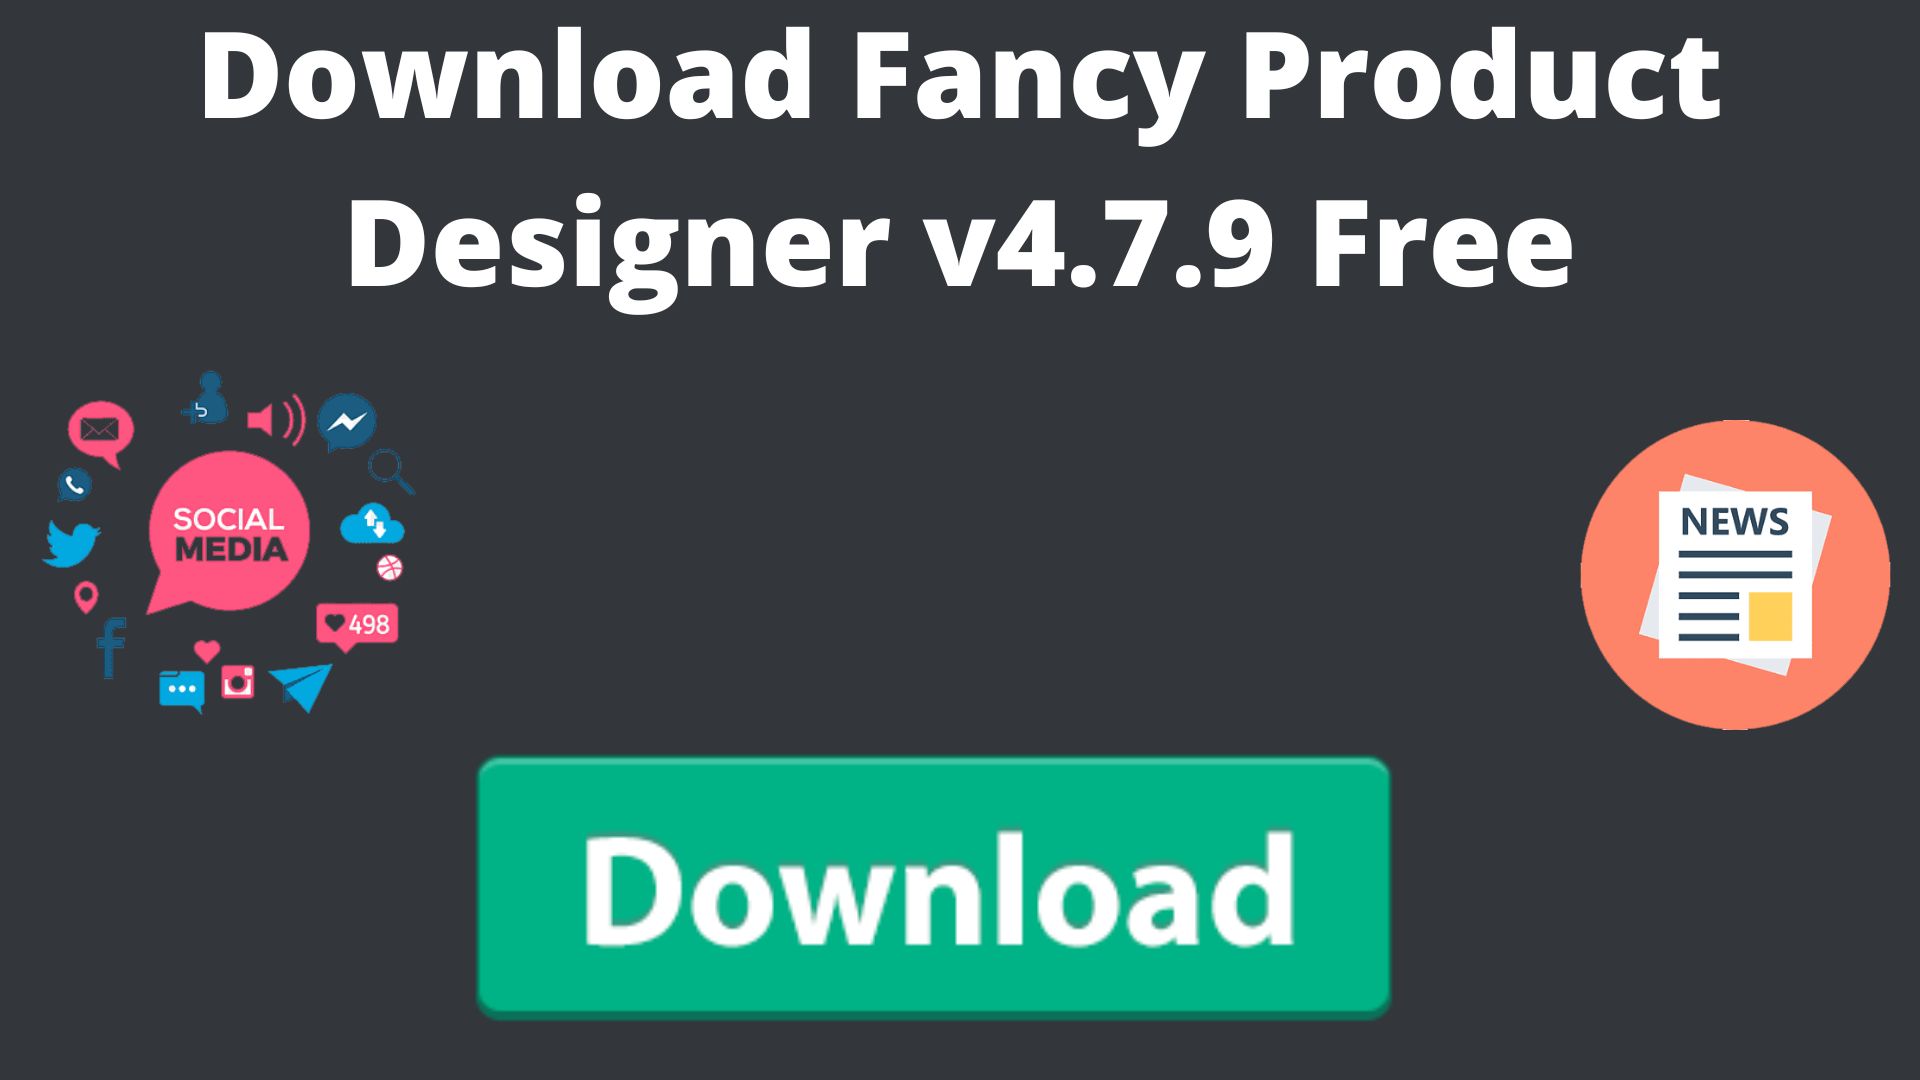 Download Fancy Product Designer V4.7.9 Free